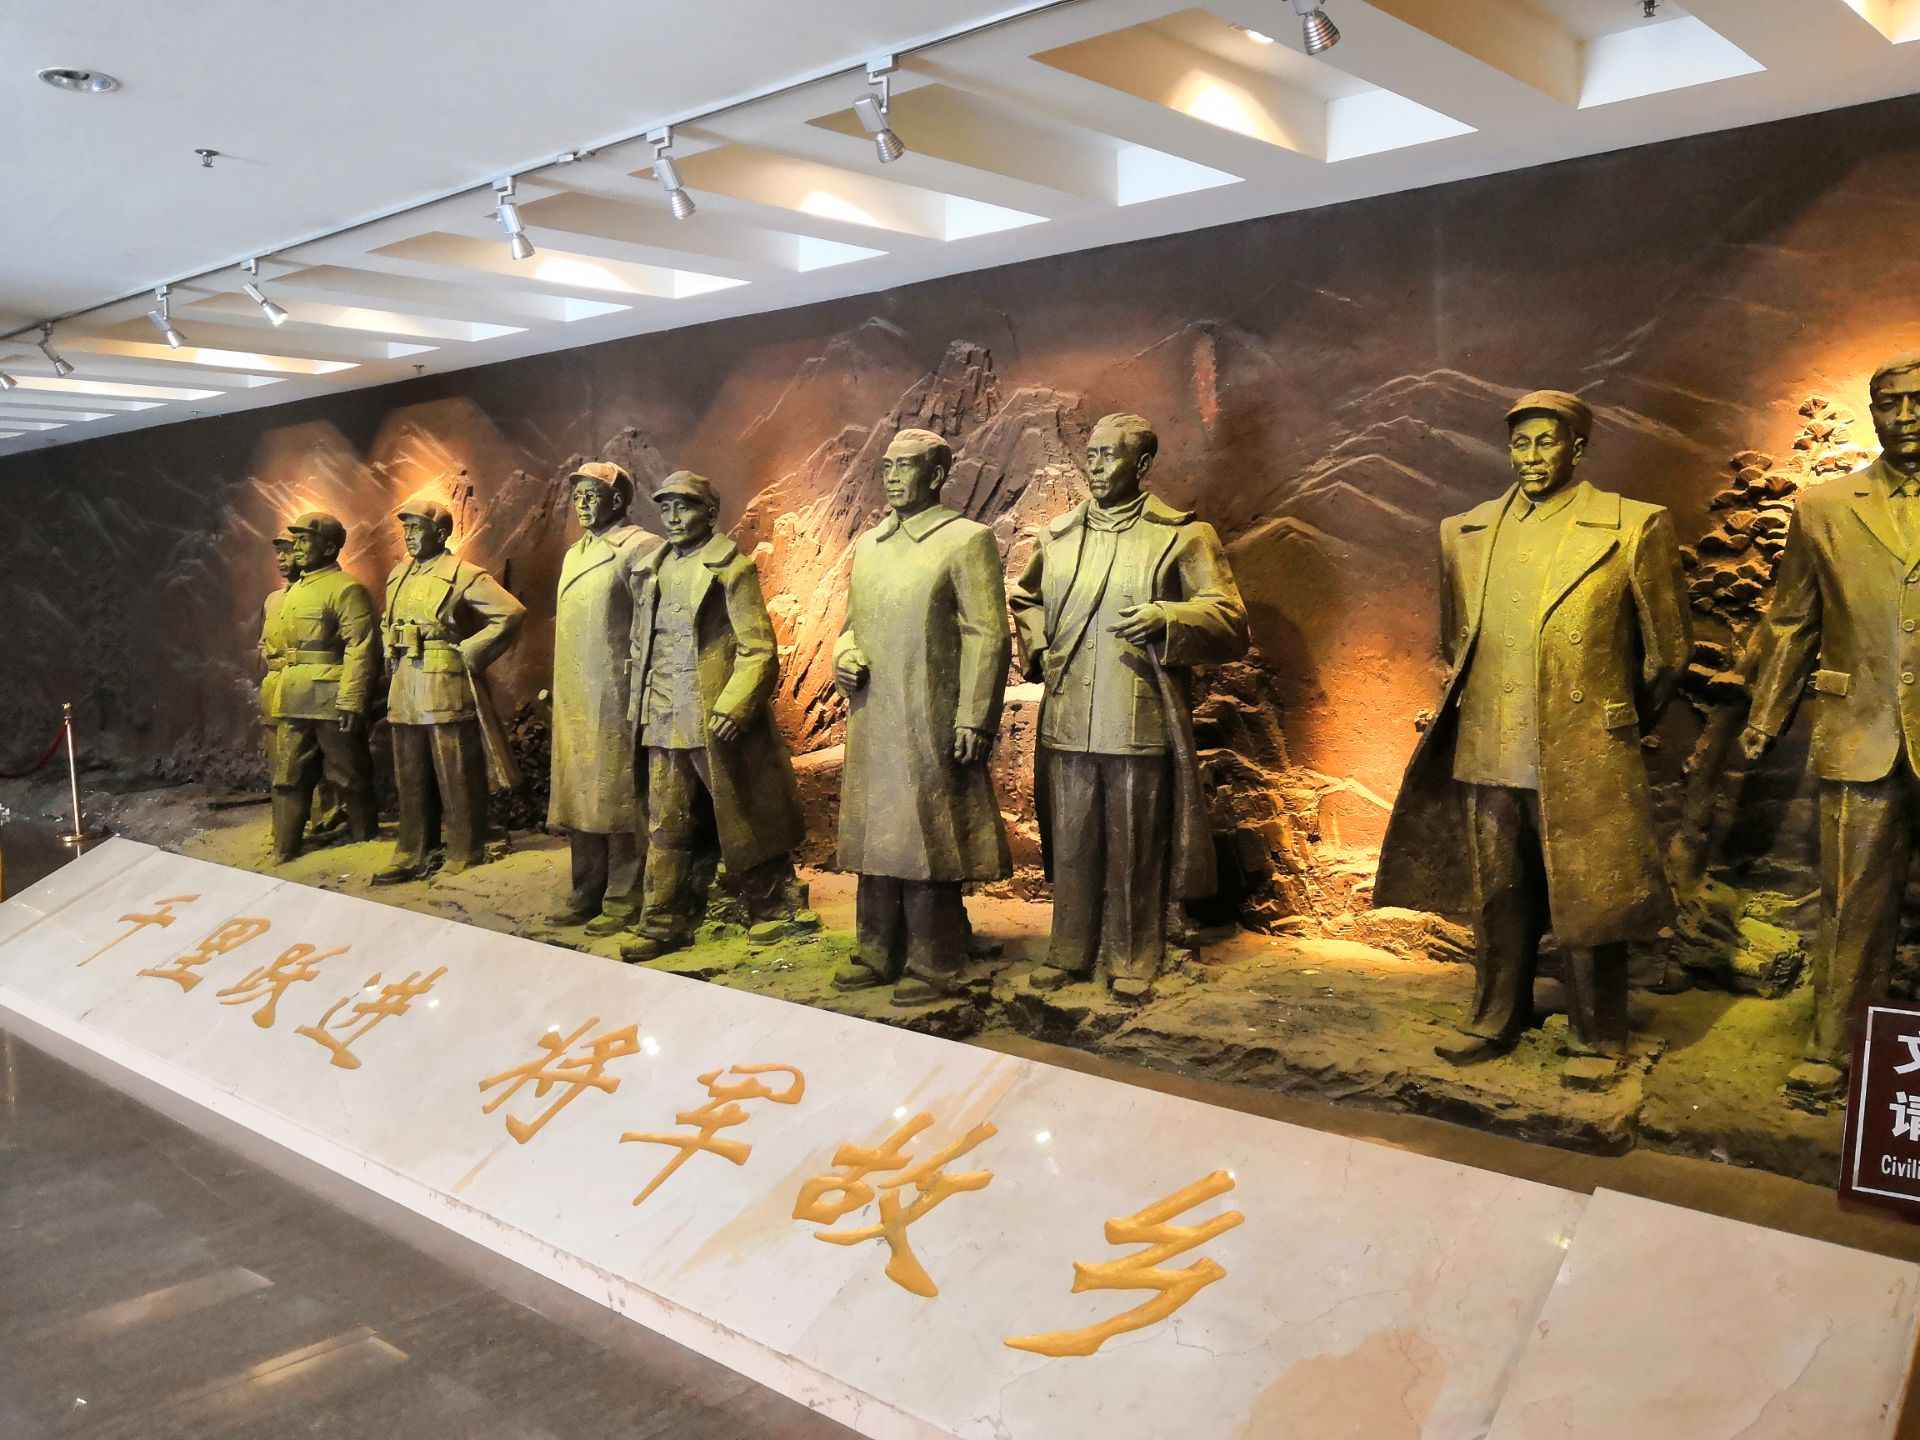 【携程攻略】重庆红岩革命纪念馆景点,重庆革命历史的博物馆，介绍详细、图文并茂，整三层楼，上山坡台阶好…